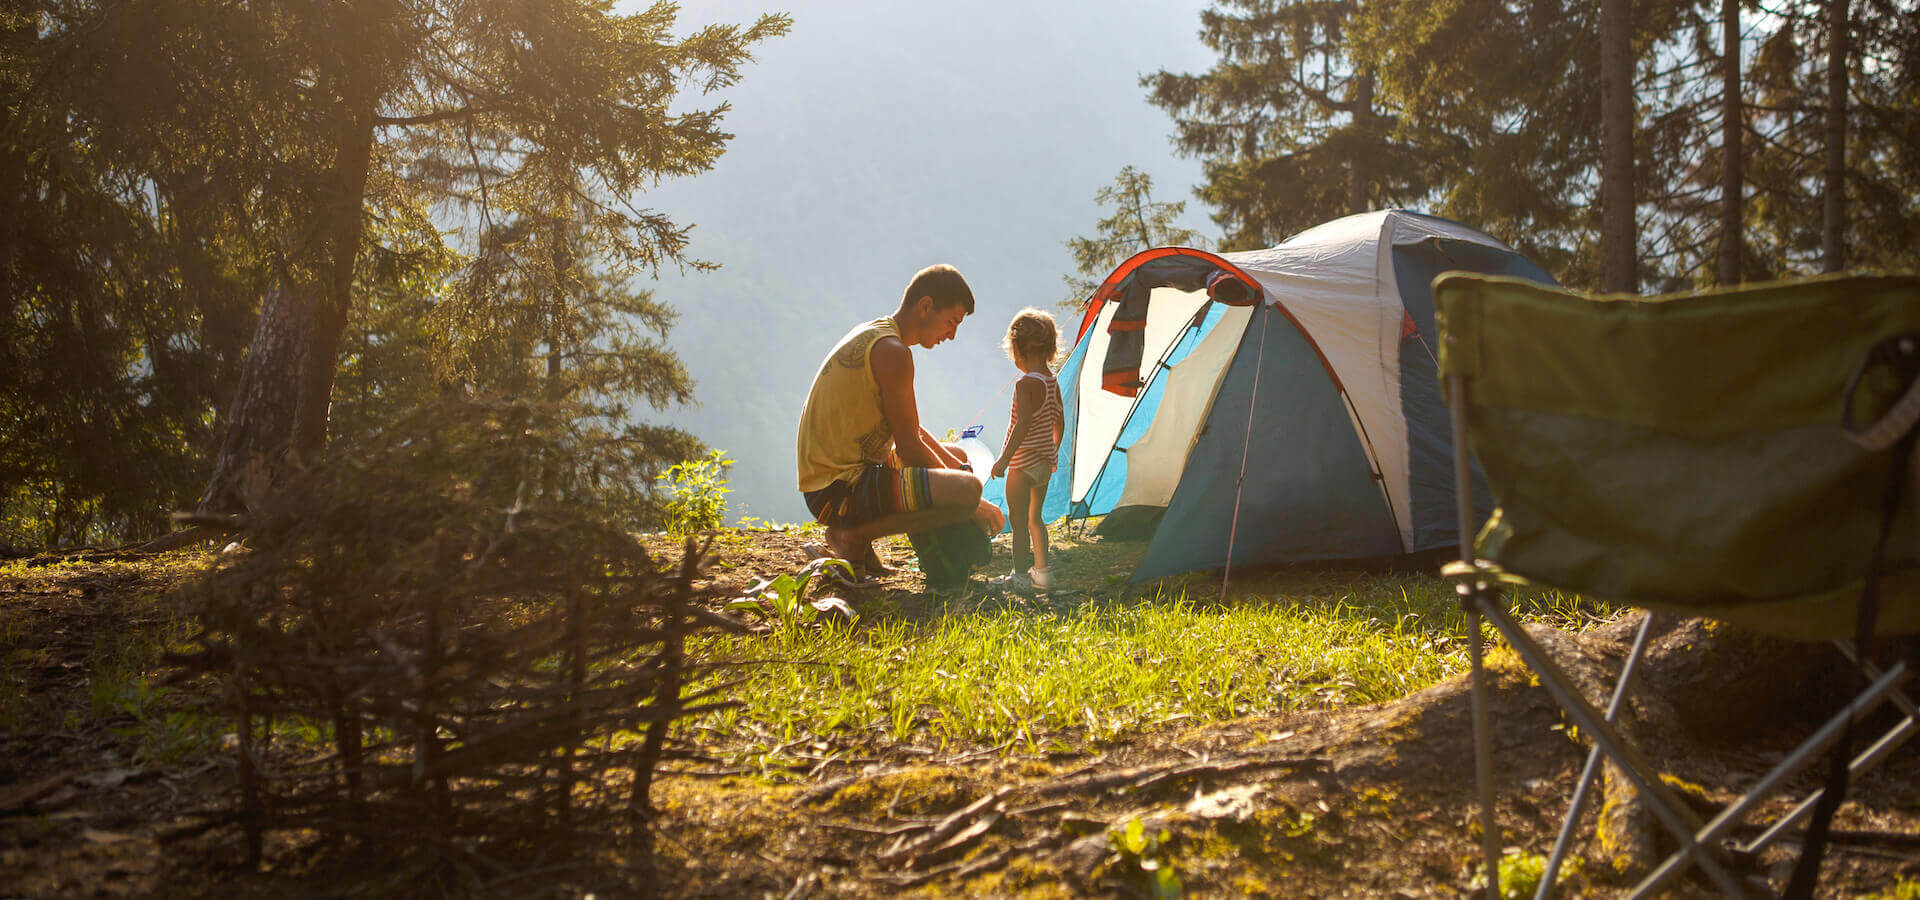 Camping sauvage : Les 10 plus beaux campings en nature en Estrie